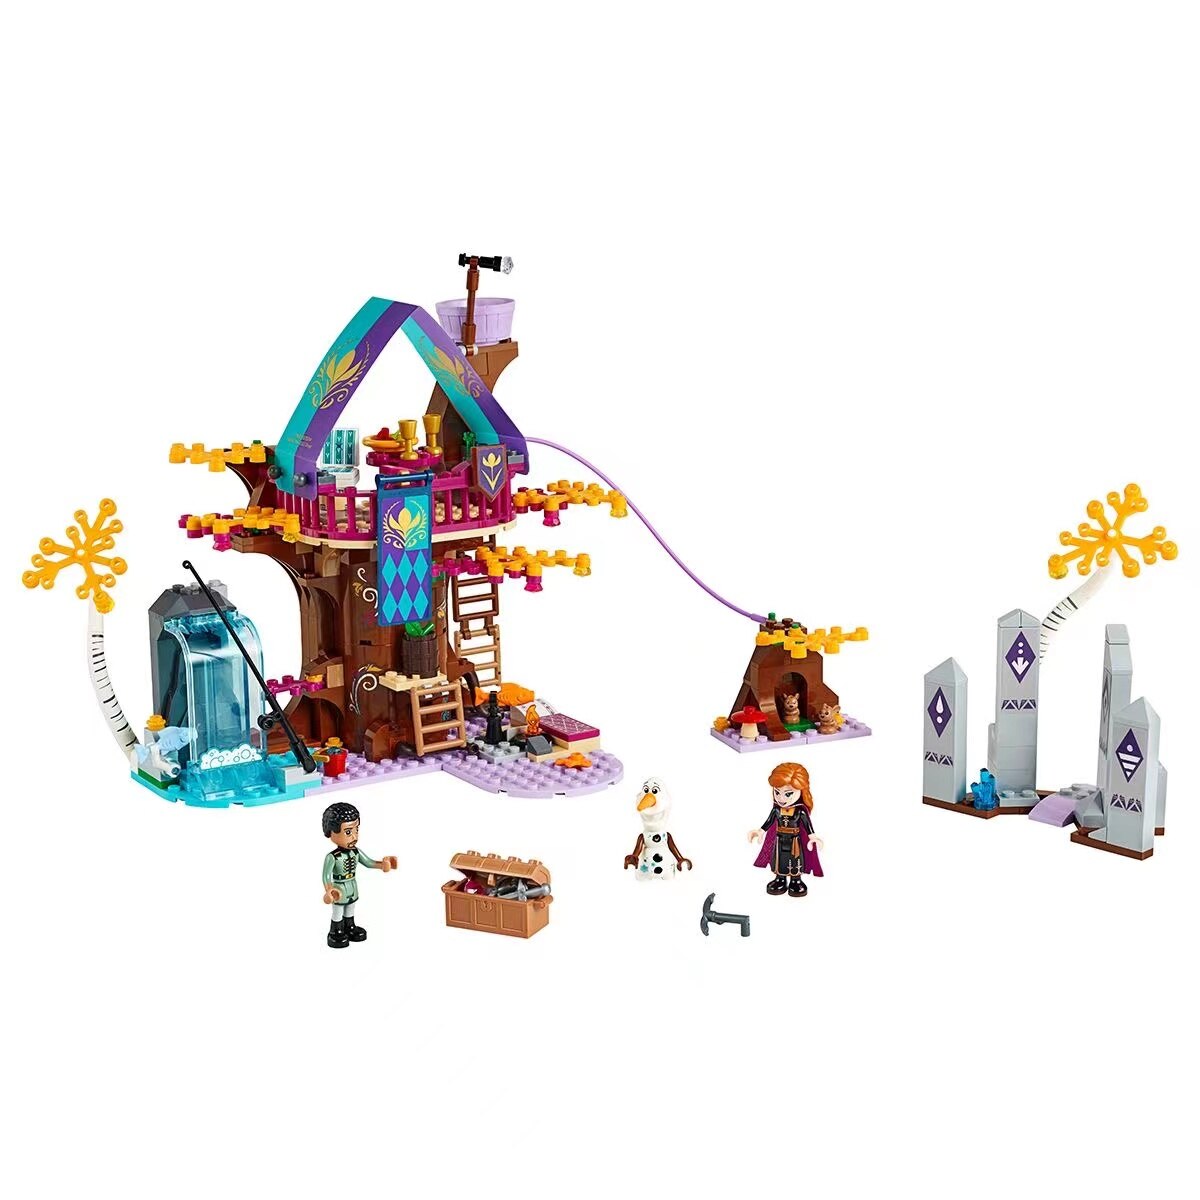 Disney-arbre-magique-pour-enfants-jouet-de-construction-marque-J70004-cadeau-d-anniversaire-frozen-41164